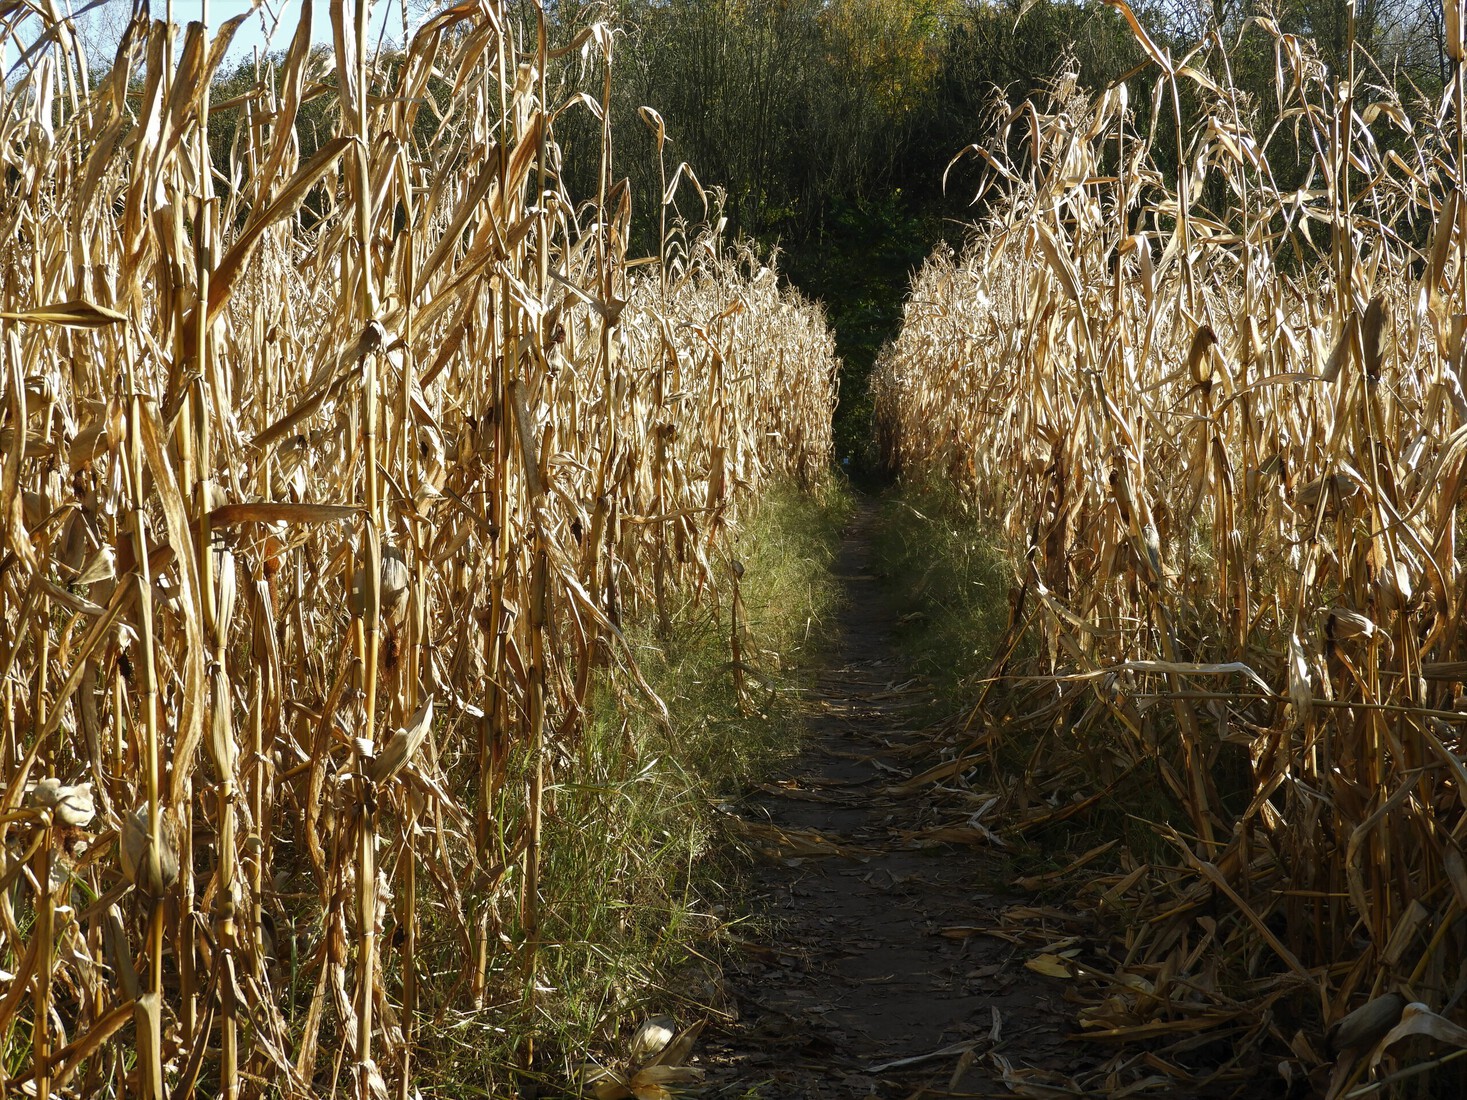 through the cornfields